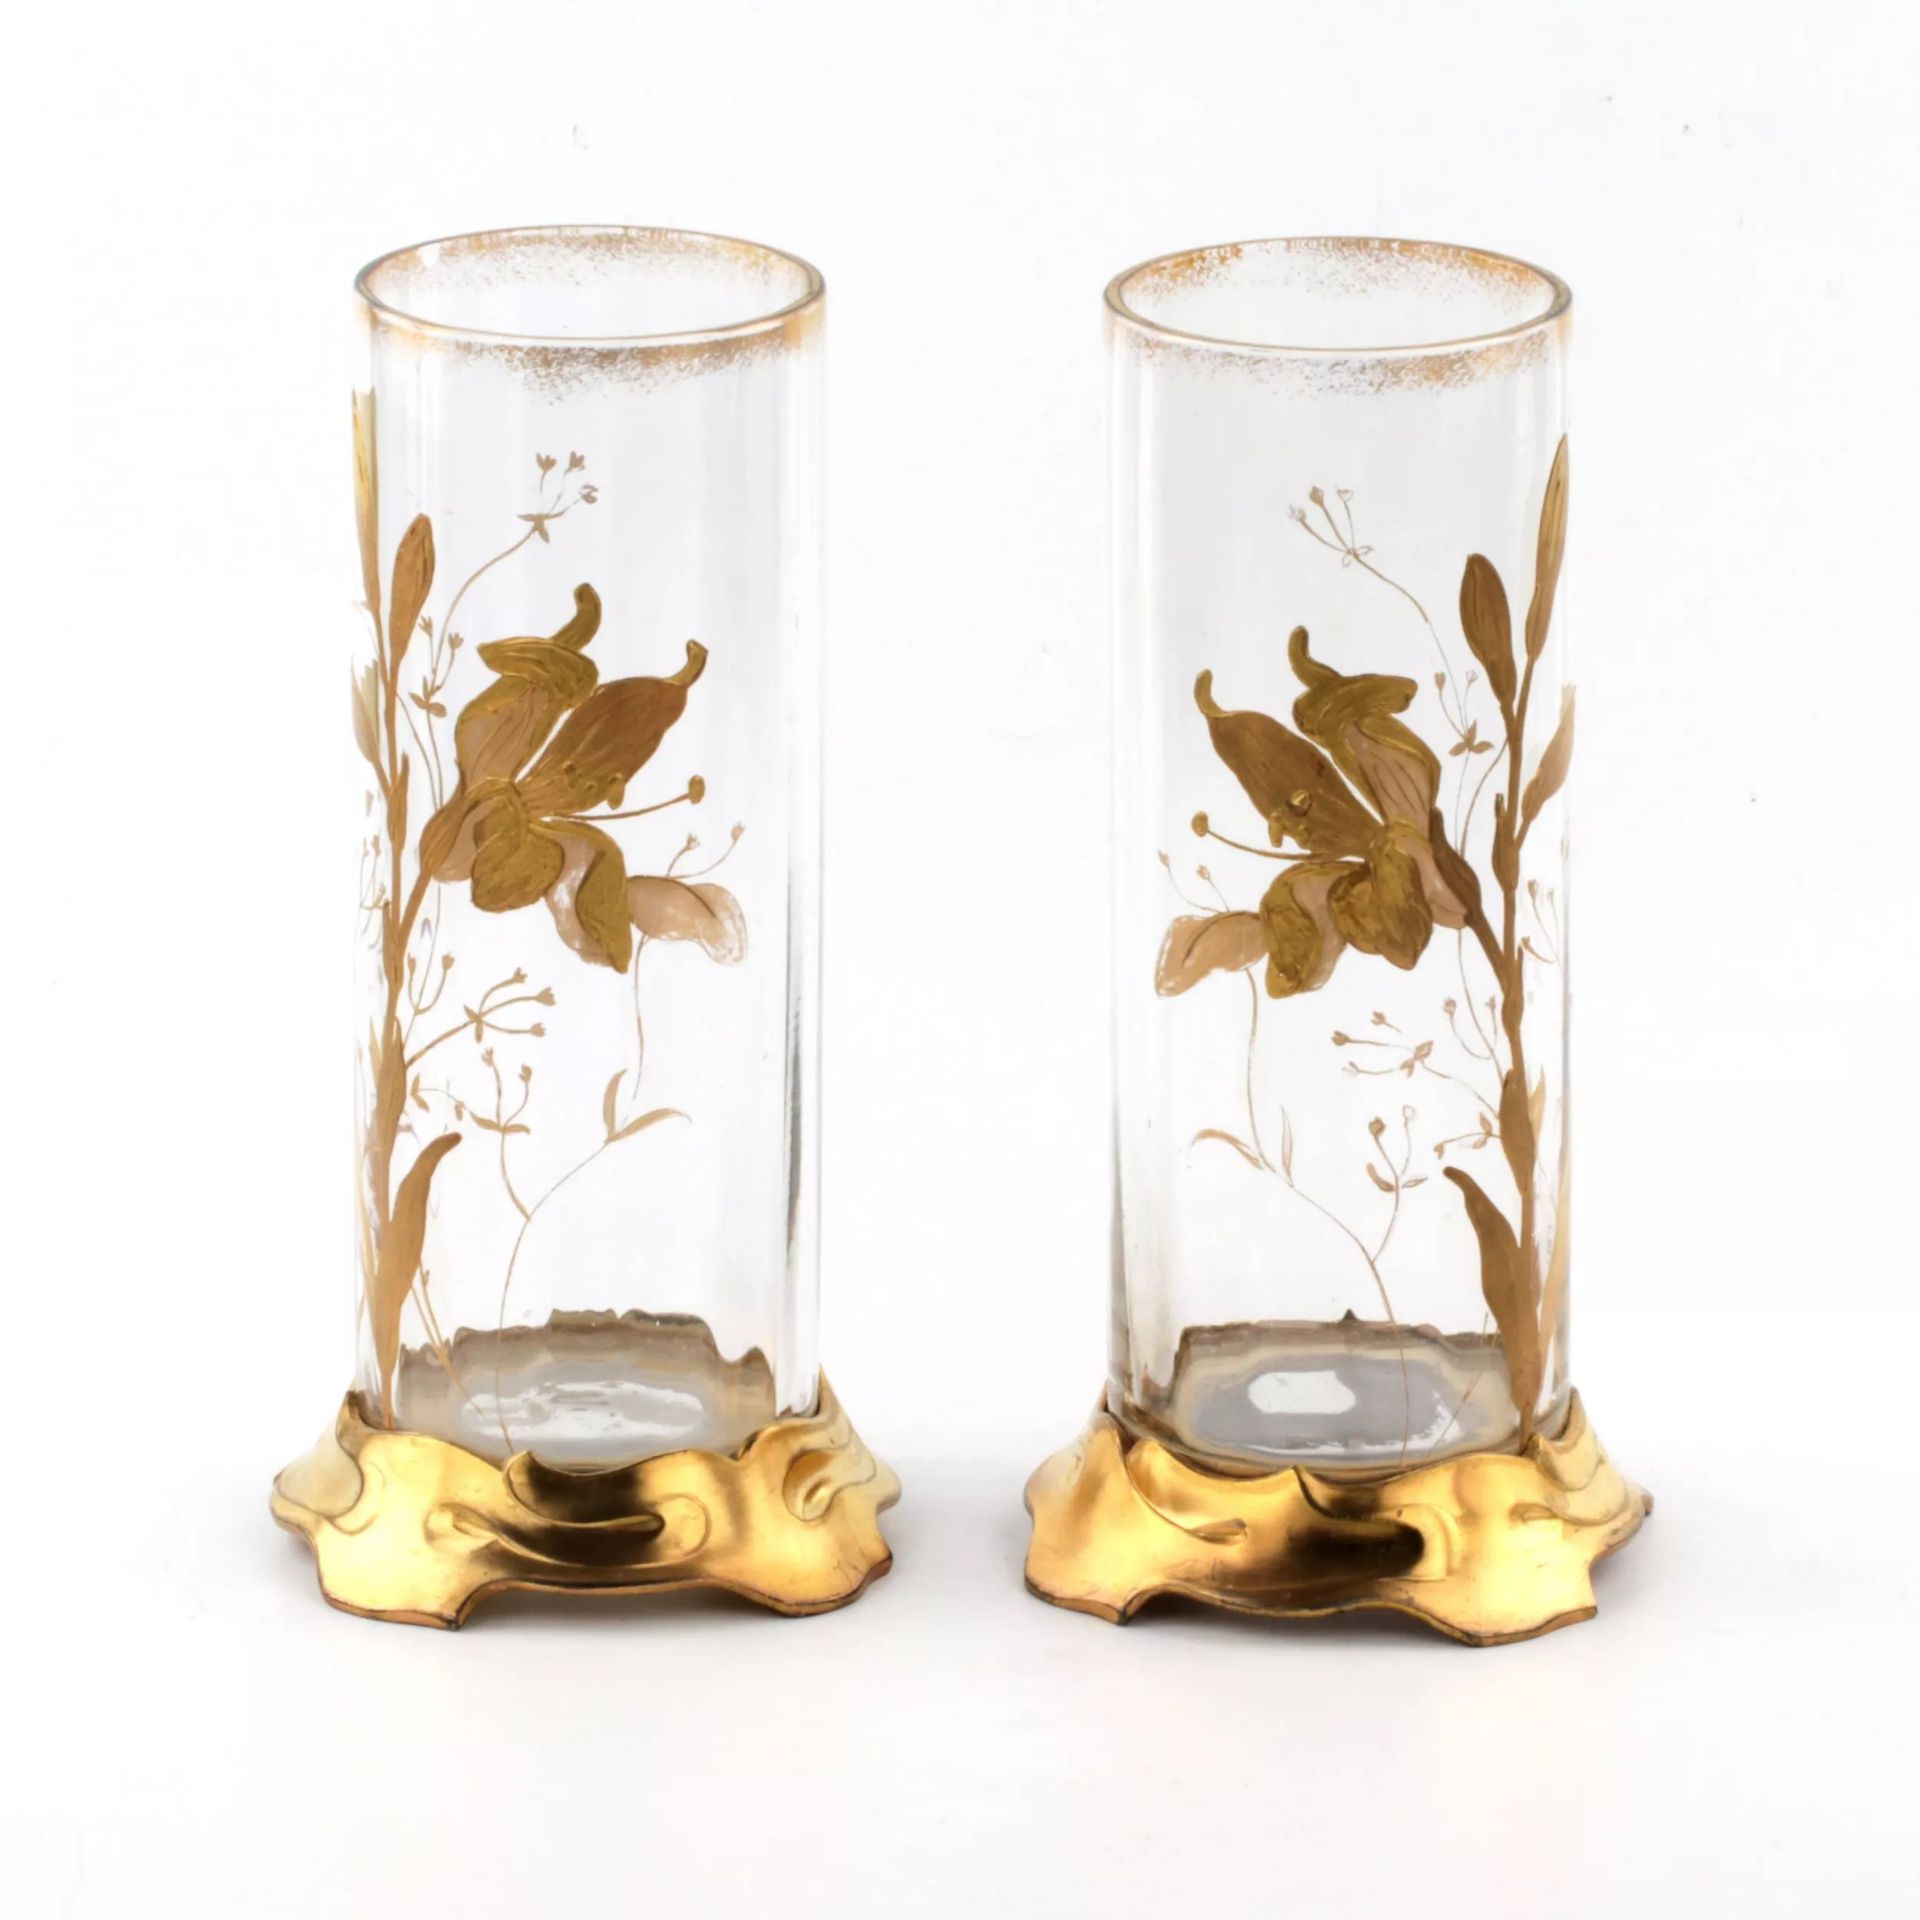 Pair of Art Nouveau vases - Image 2 of 5